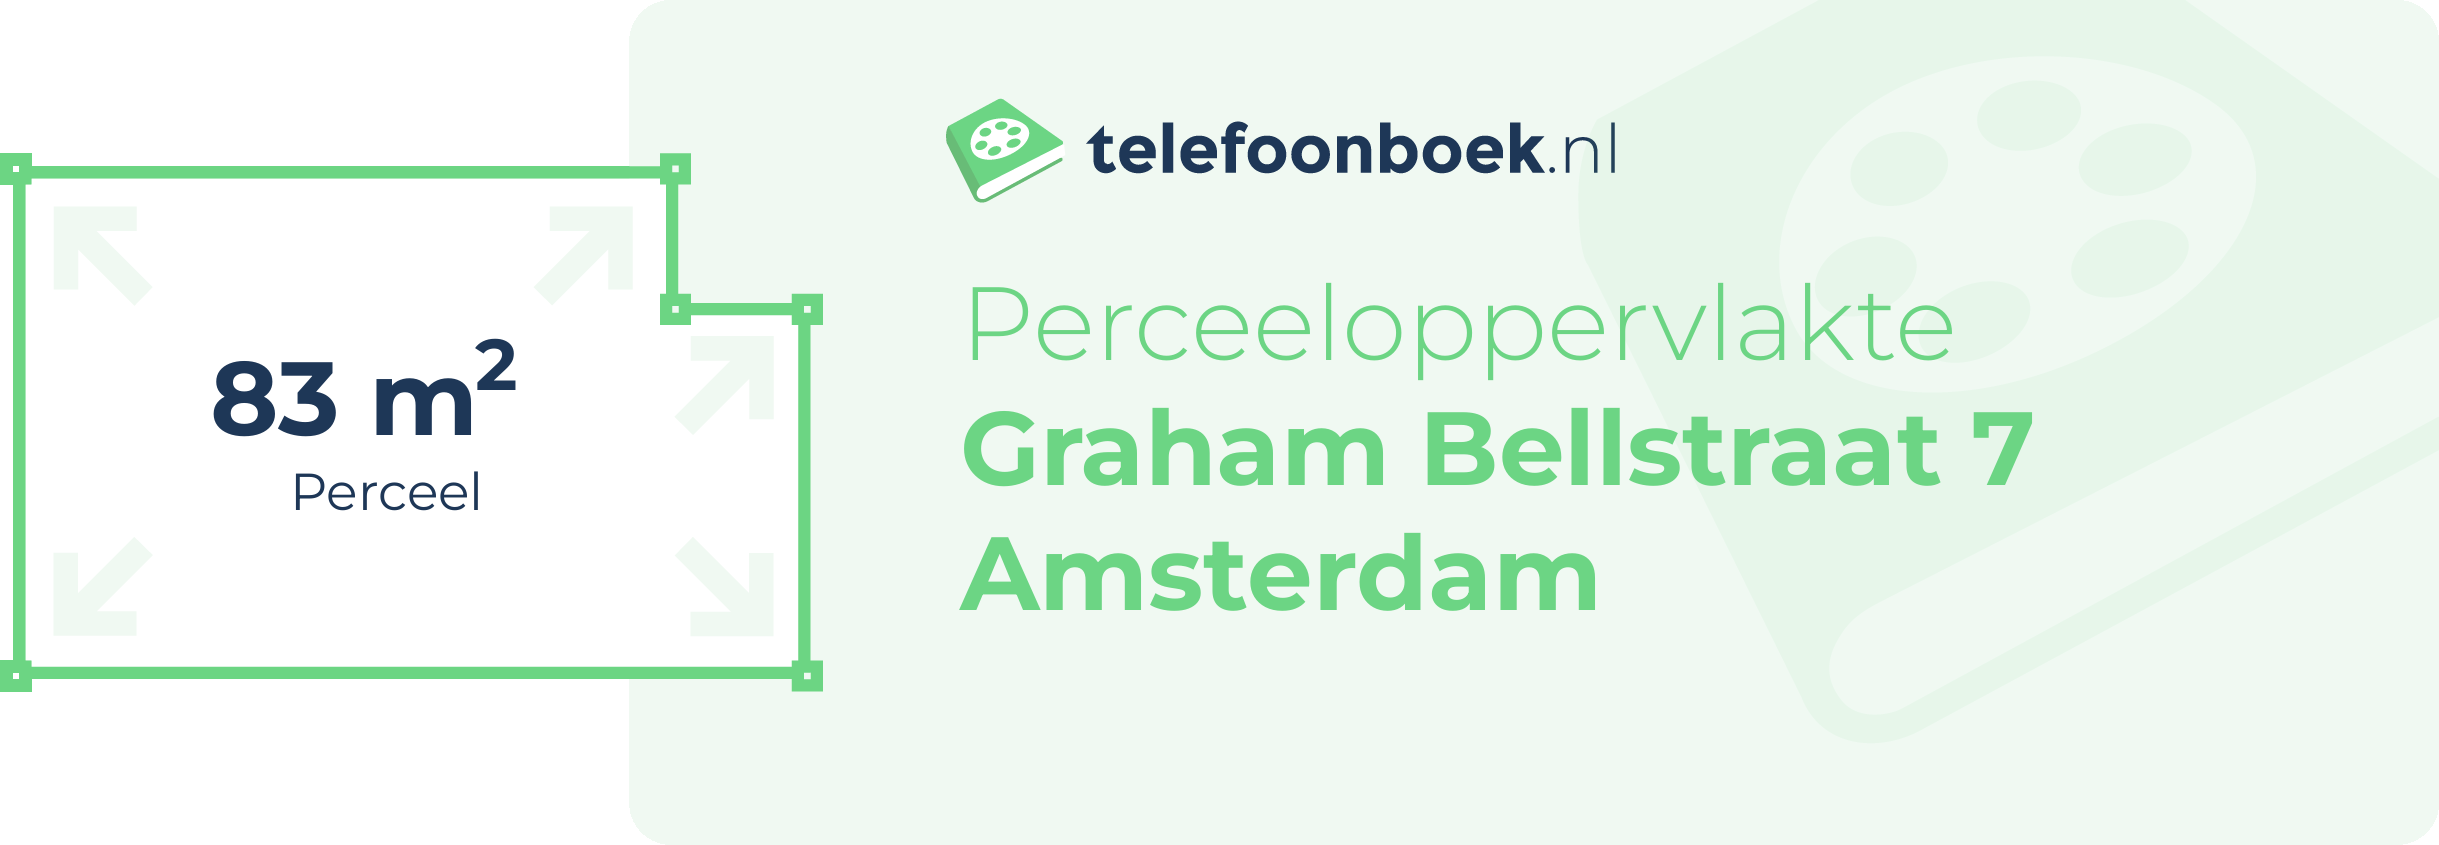 Perceeloppervlakte Graham Bellstraat 7 Amsterdam